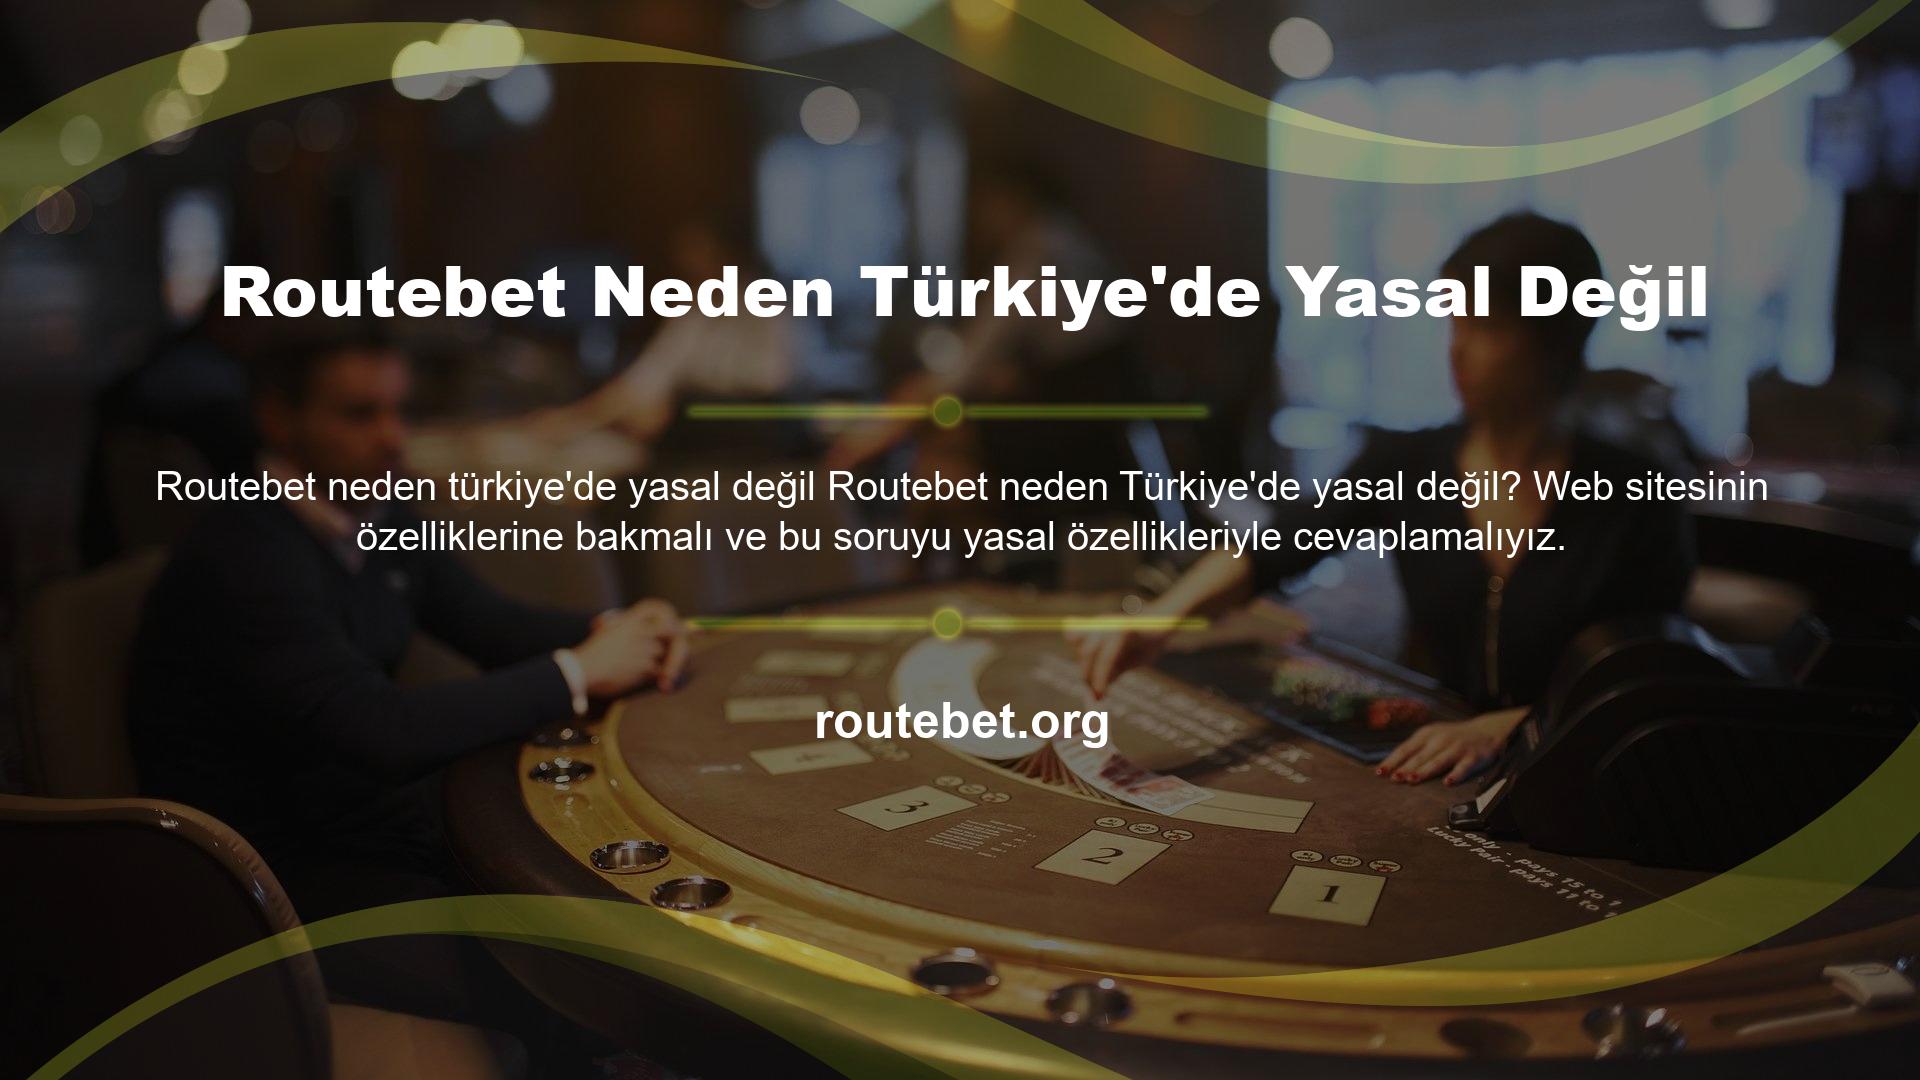 Routebet web sitesi Türkiye pazarında yasal olarak kabul görmemekle birlikte uluslararası oyun platformlarında yasal prosedürlerini tamamlamış ve hizmetlerini kabul etmiş bir firma olarak kabul edilmektedir